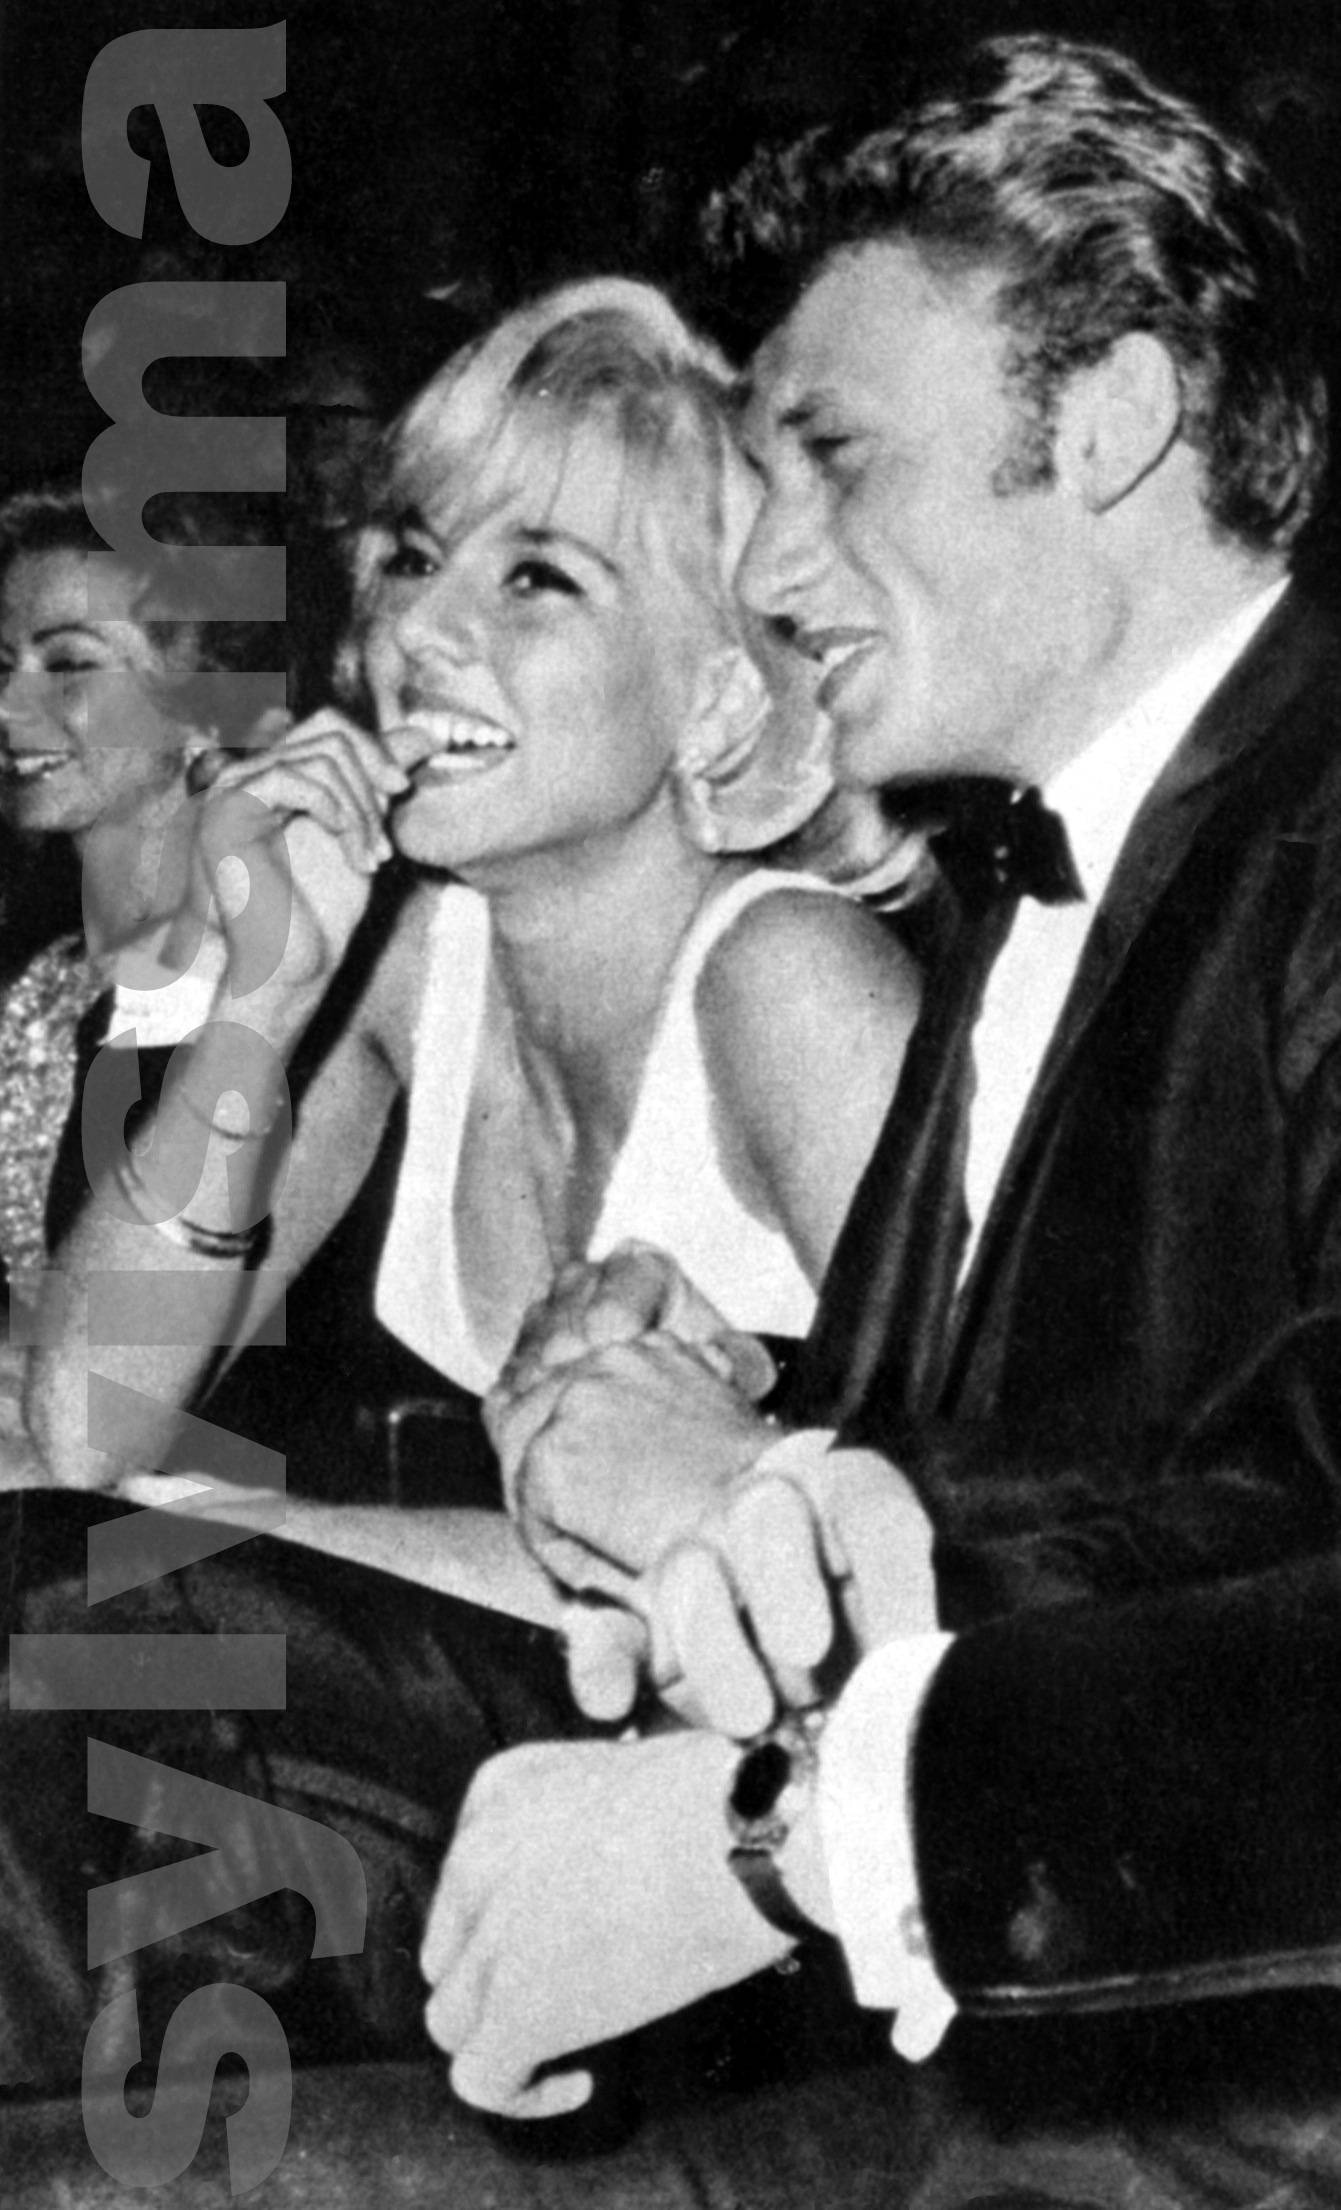 Sylvie Vartan et Johnny Hallyday à la projection de "Doù viens-tu Johnny" en 1963